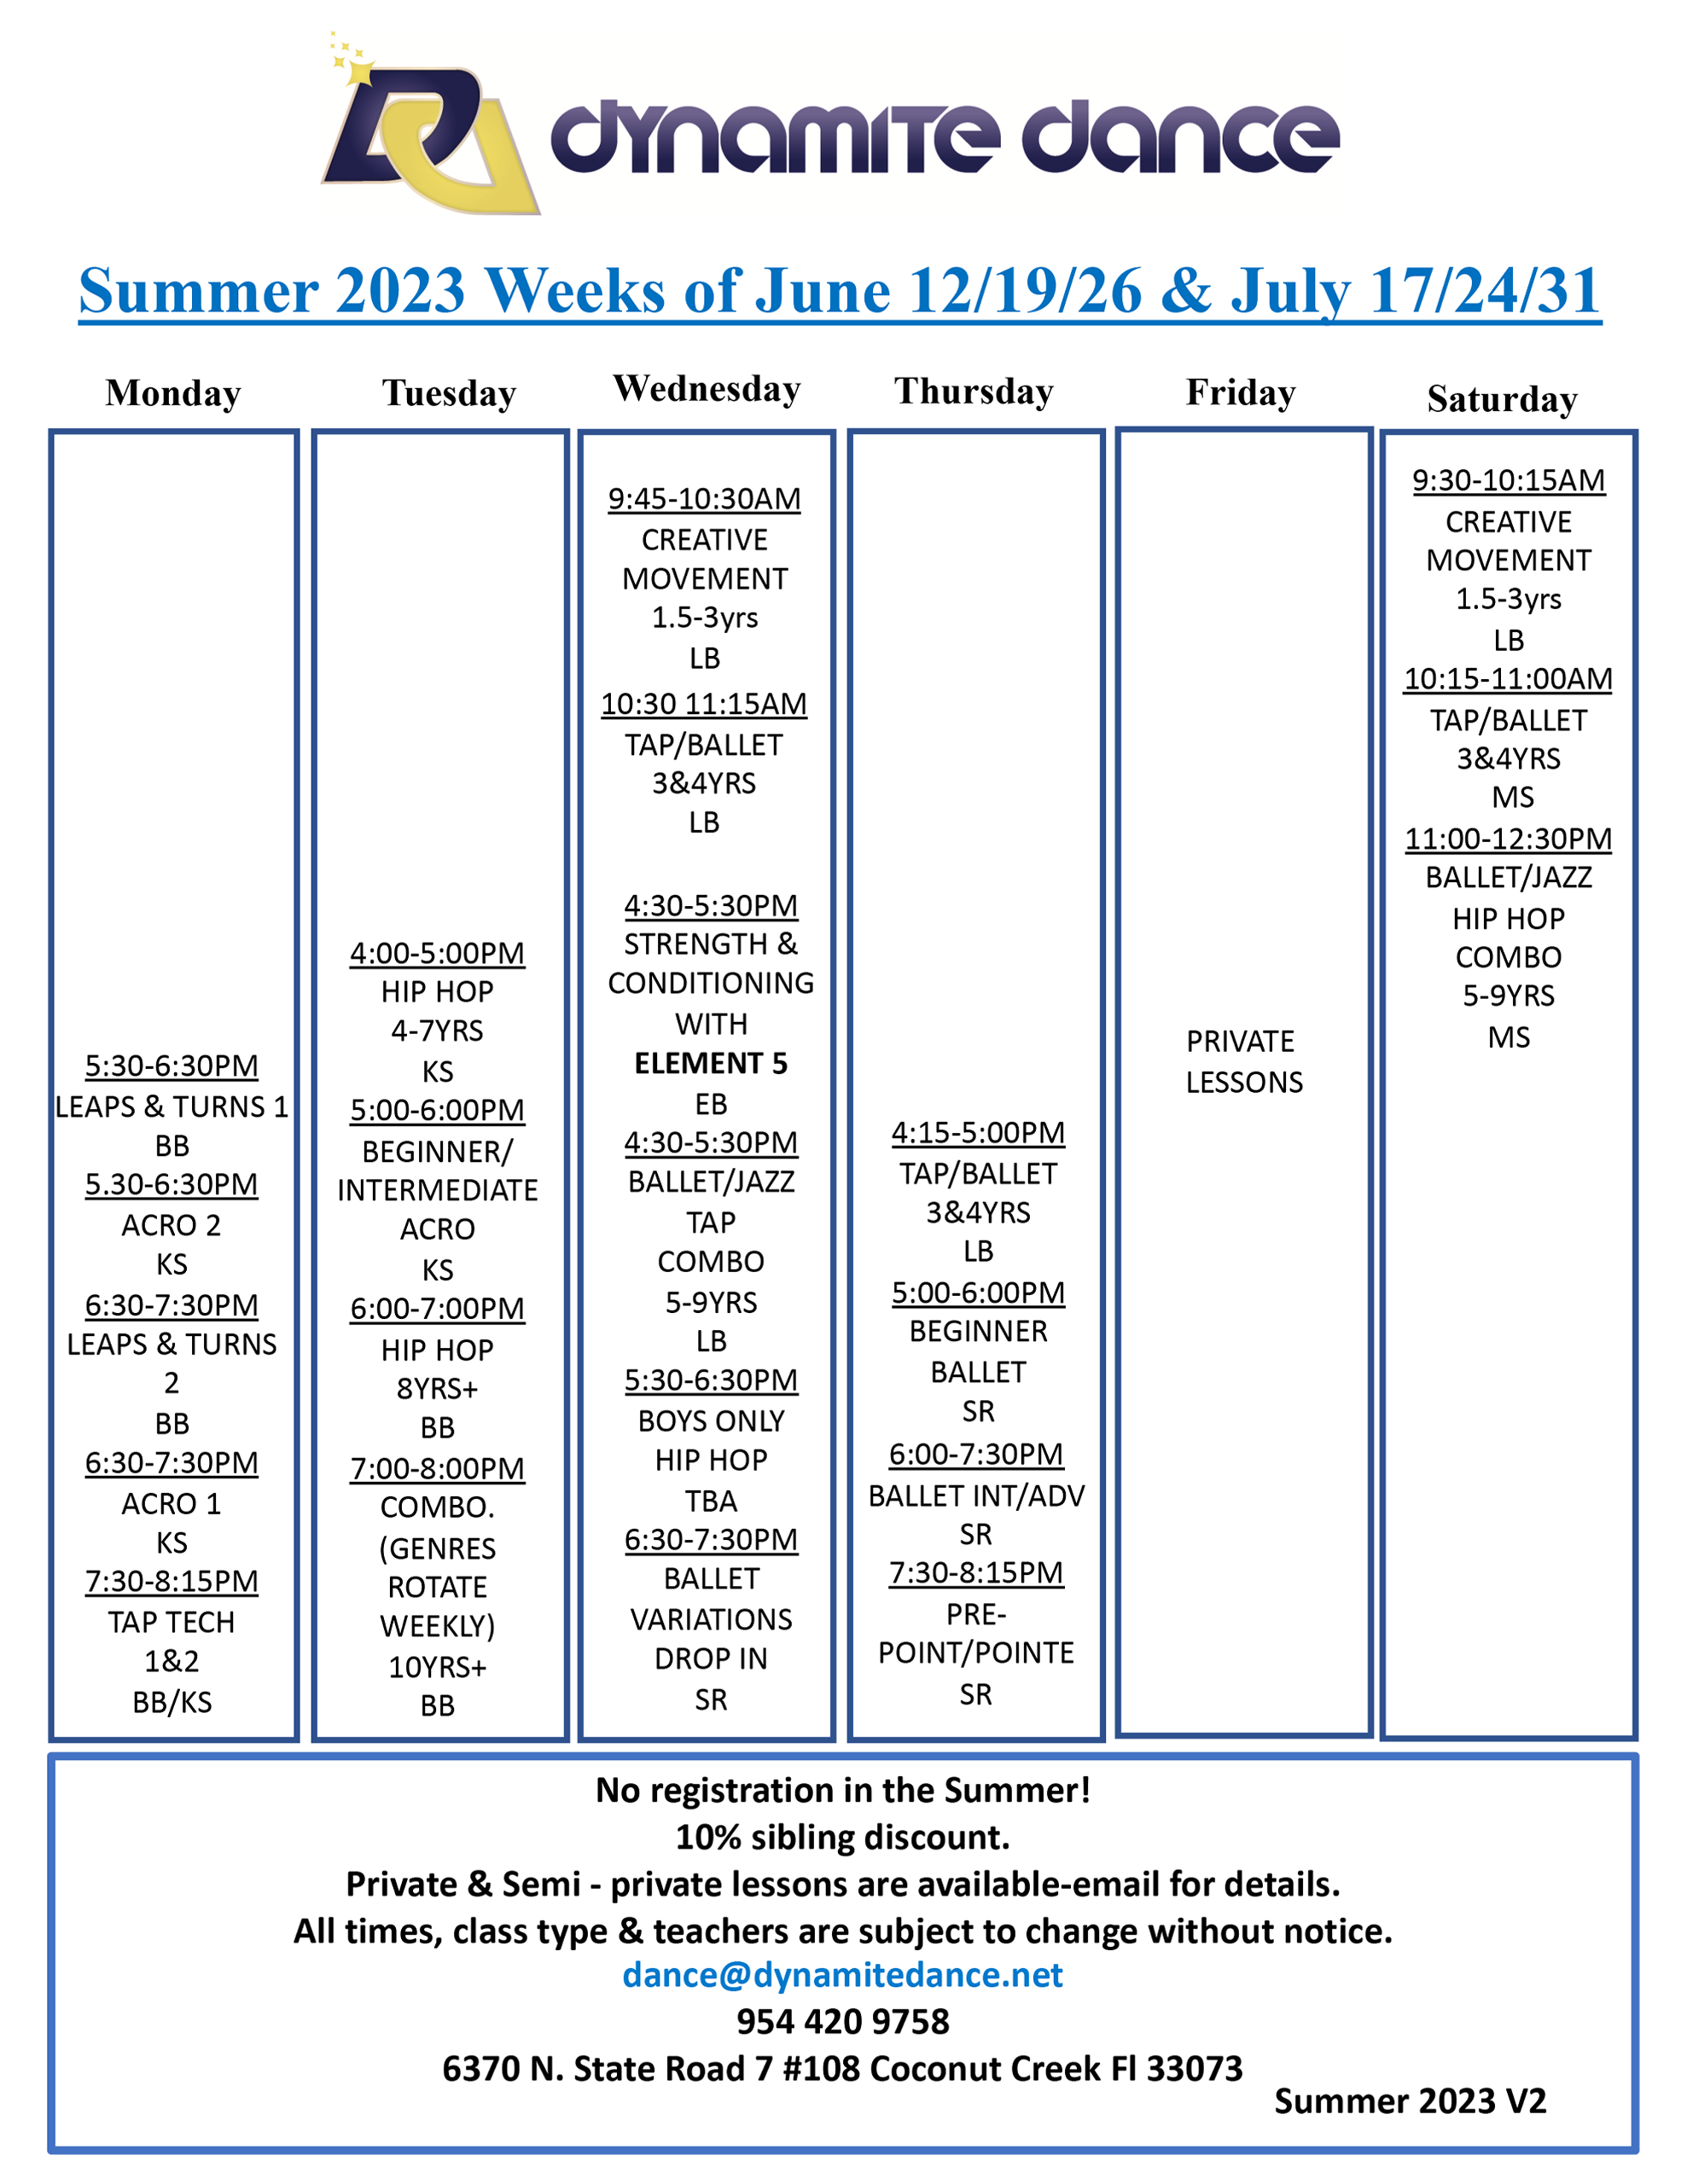 Summer 2023 V2-schedule